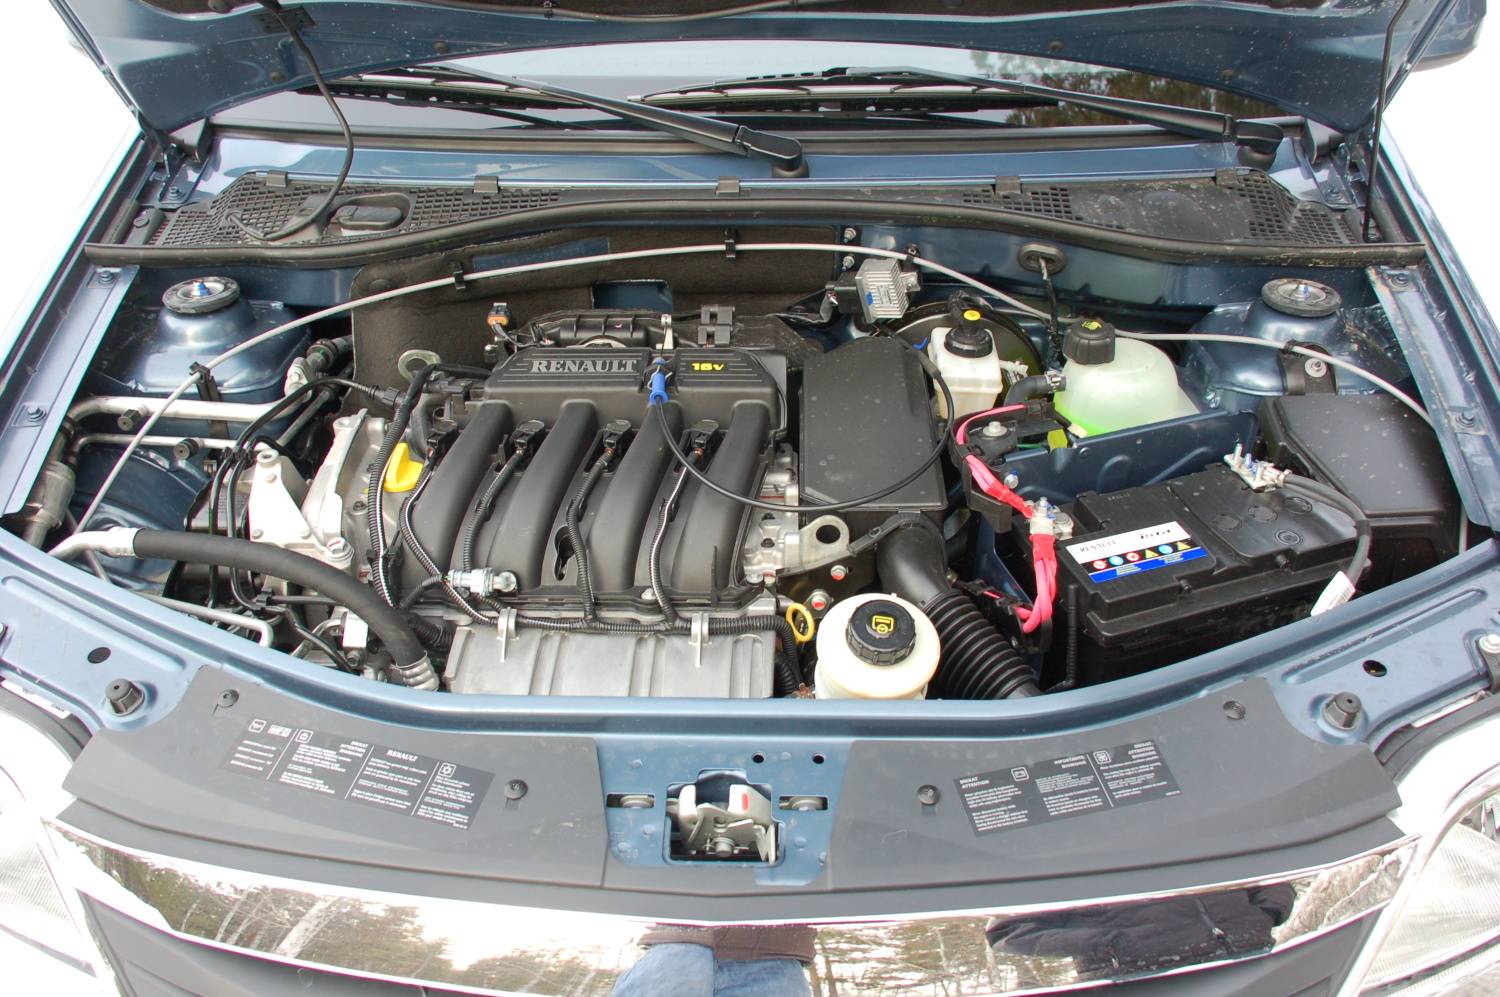 Renault logan 1.4, 1.6 — 8 и 16 клапанные расход топлива, бензина на 100 км.